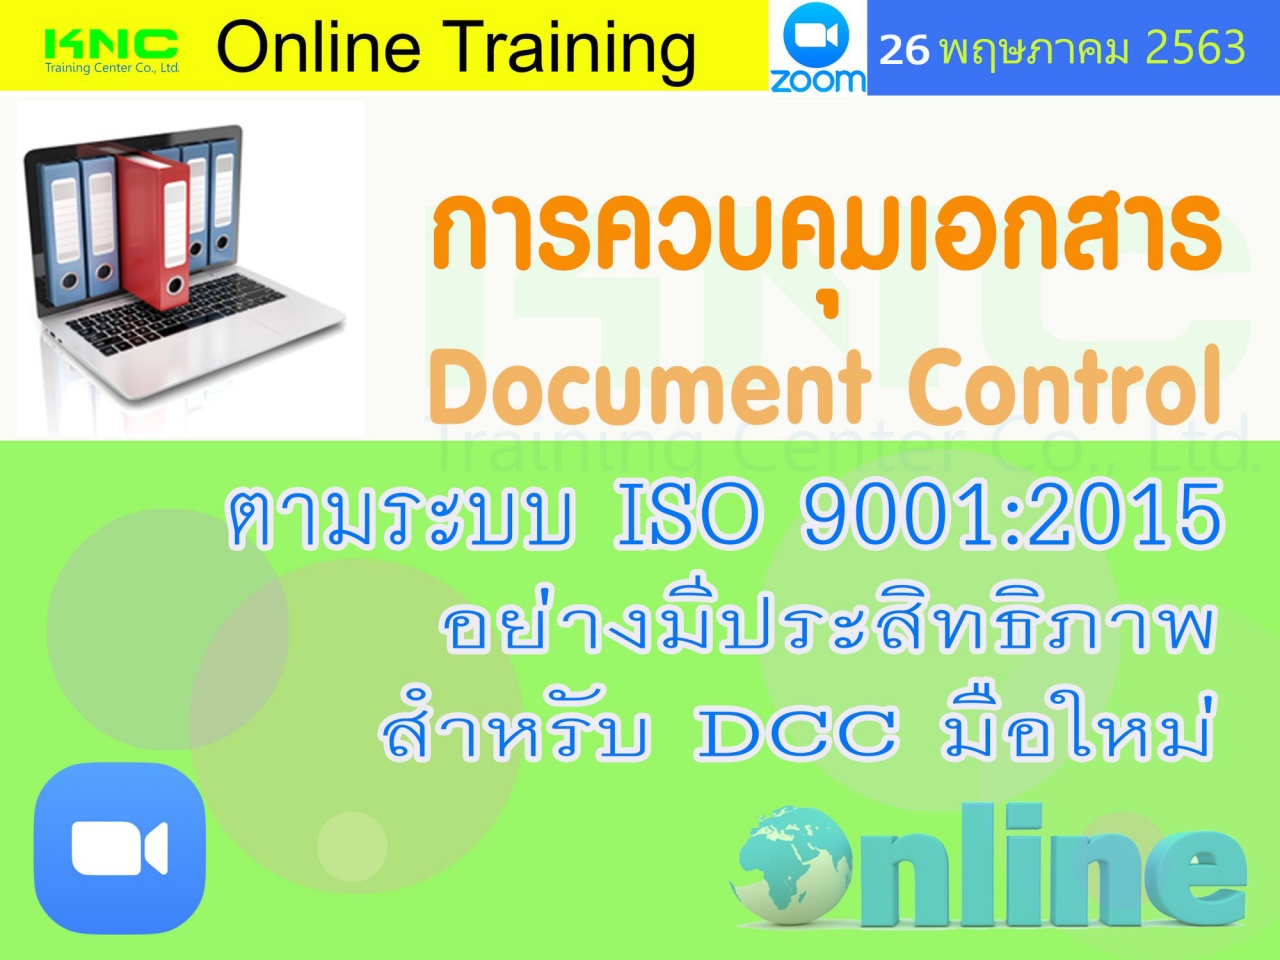 สัมมนาออนไลน์ : การควบคุมเอกสาร Document Control ตามระบบ ISO 9001:2015 อย่างมีประสิทธิภาพสำหรับ DCC มือใหม่